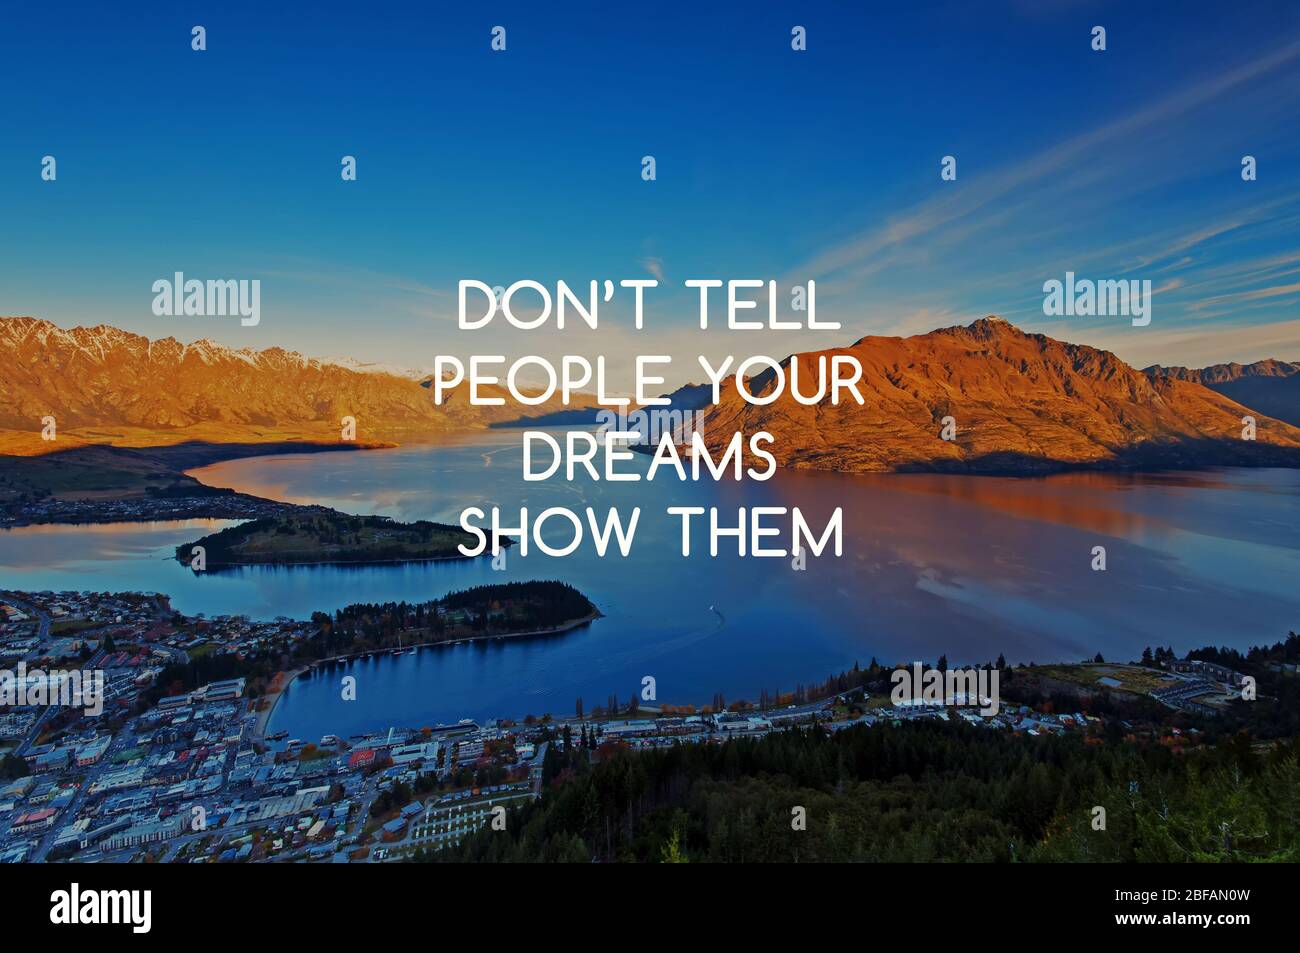 Inspirierende Zitate - erzählen Sie den Menschen nicht, was Ihre Träume ihnen zeigen. Stockfoto